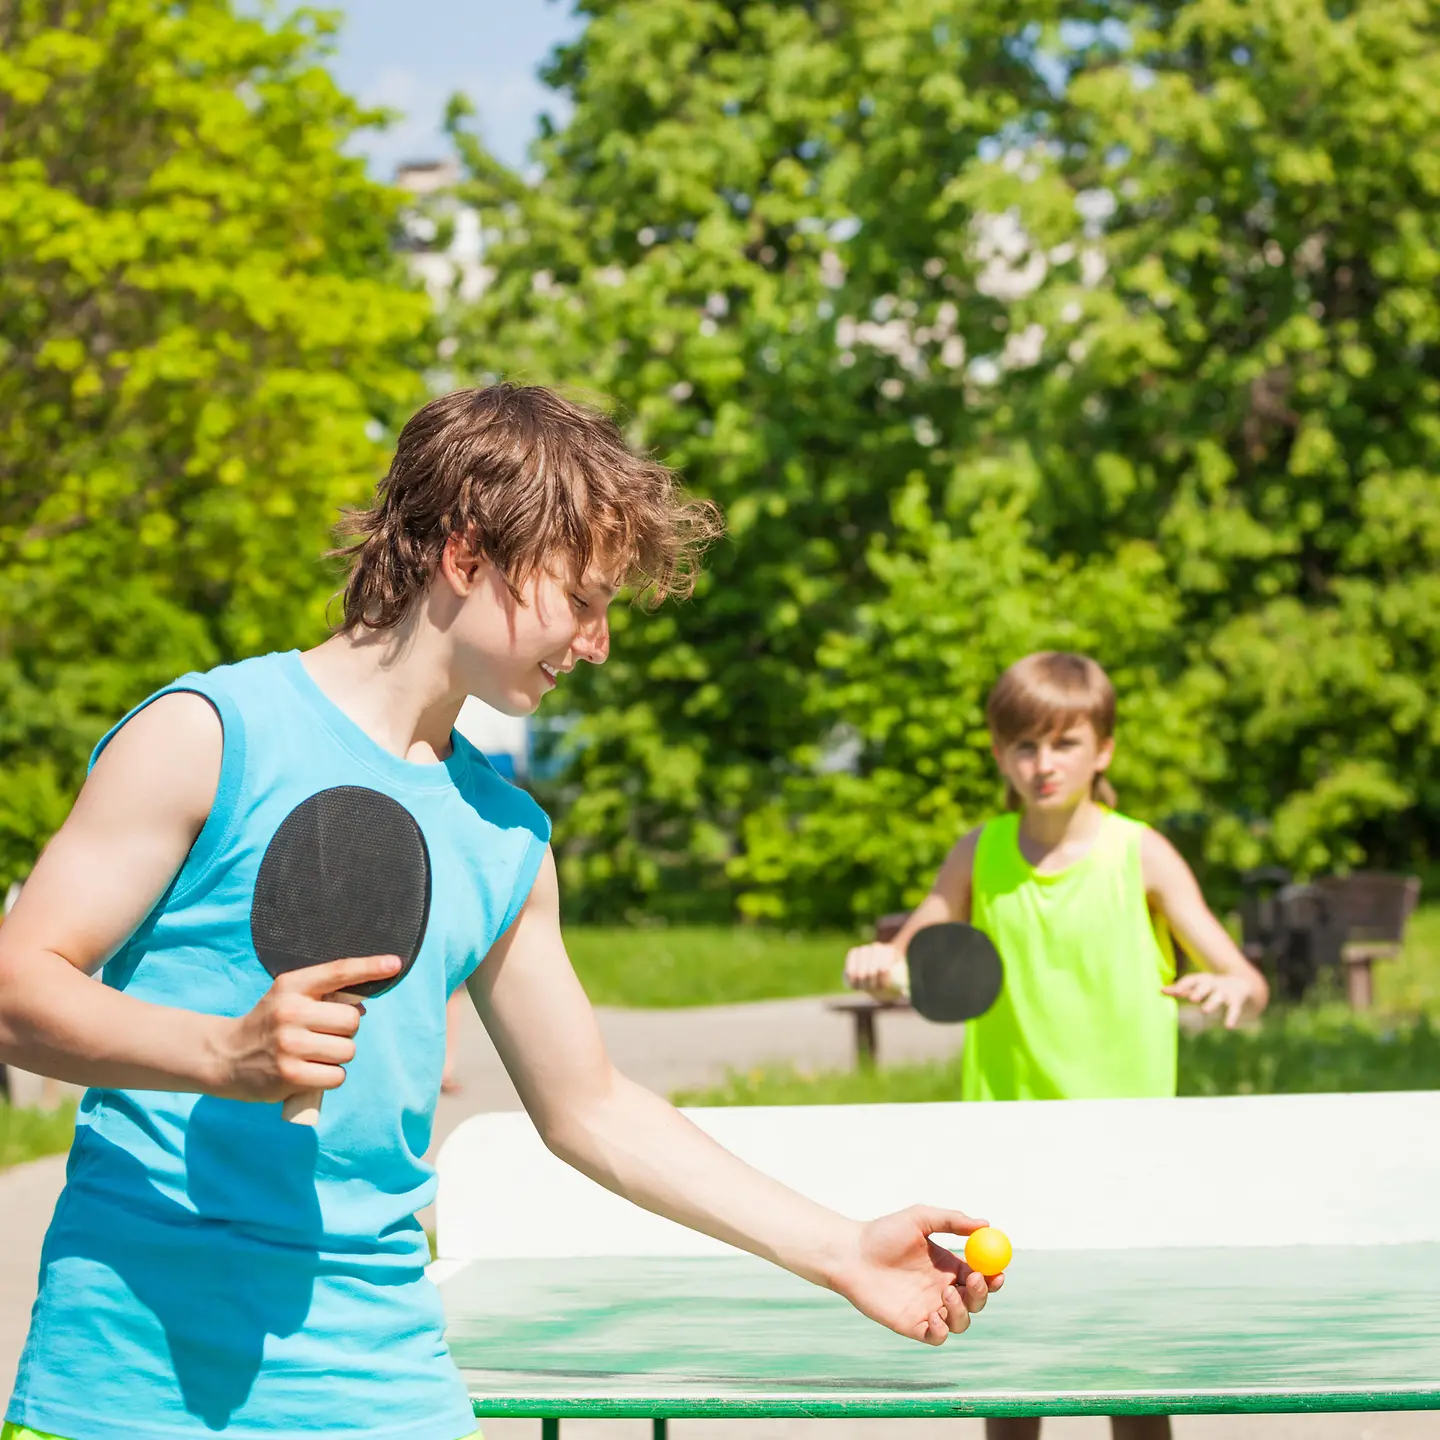 Das Bild zeigt zwei Jungs beim Tischtennis spielen.